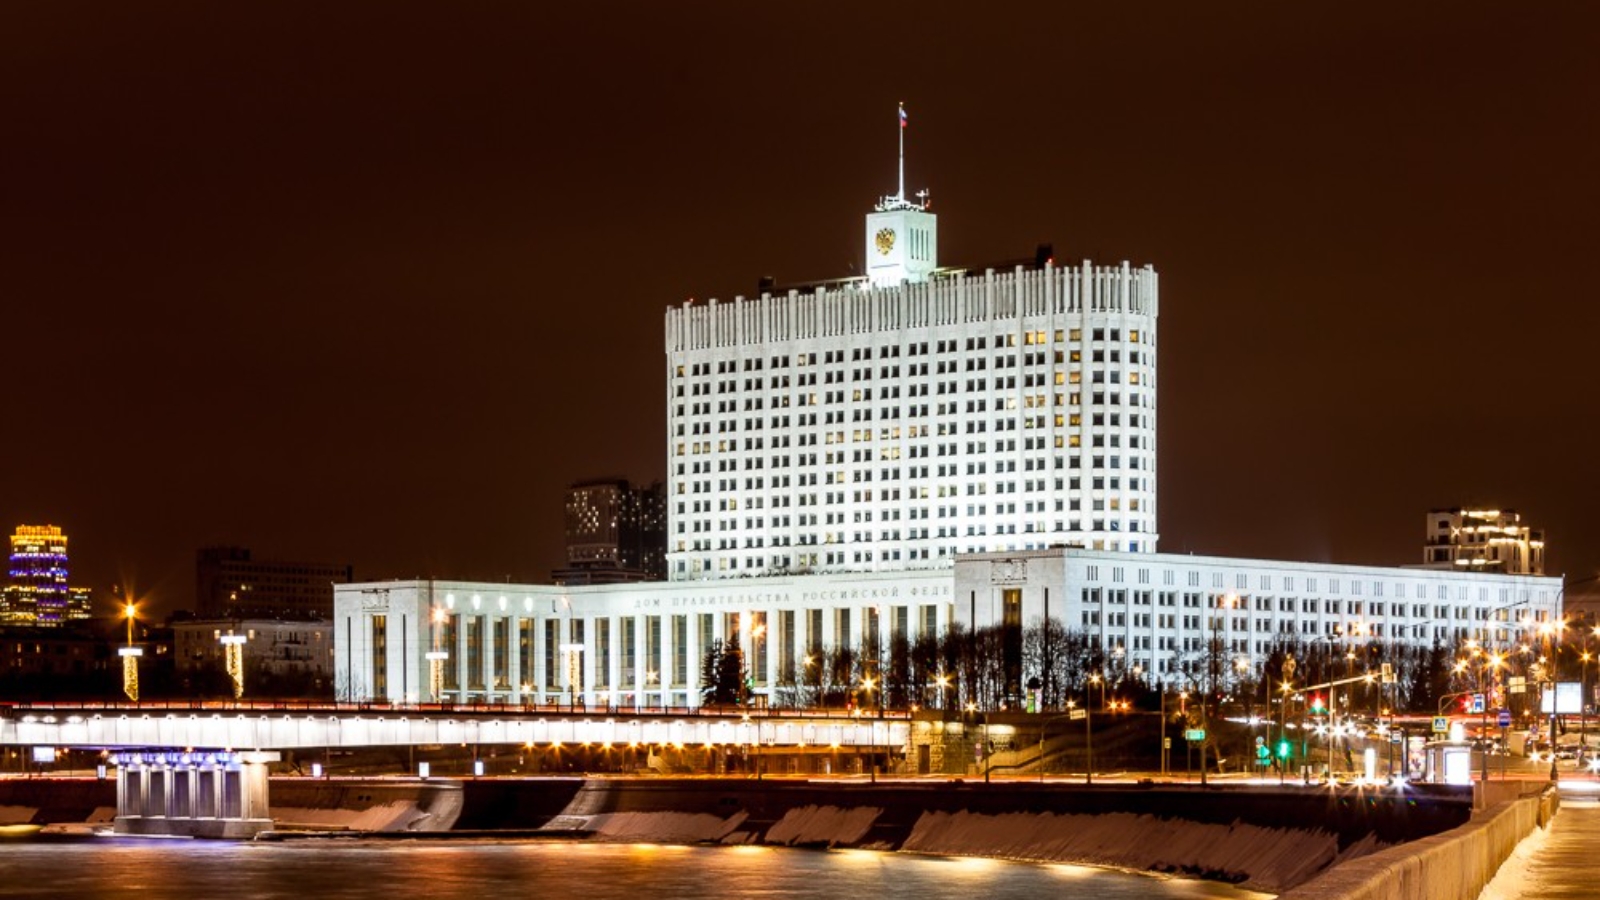 дом правительства российской федерации москва